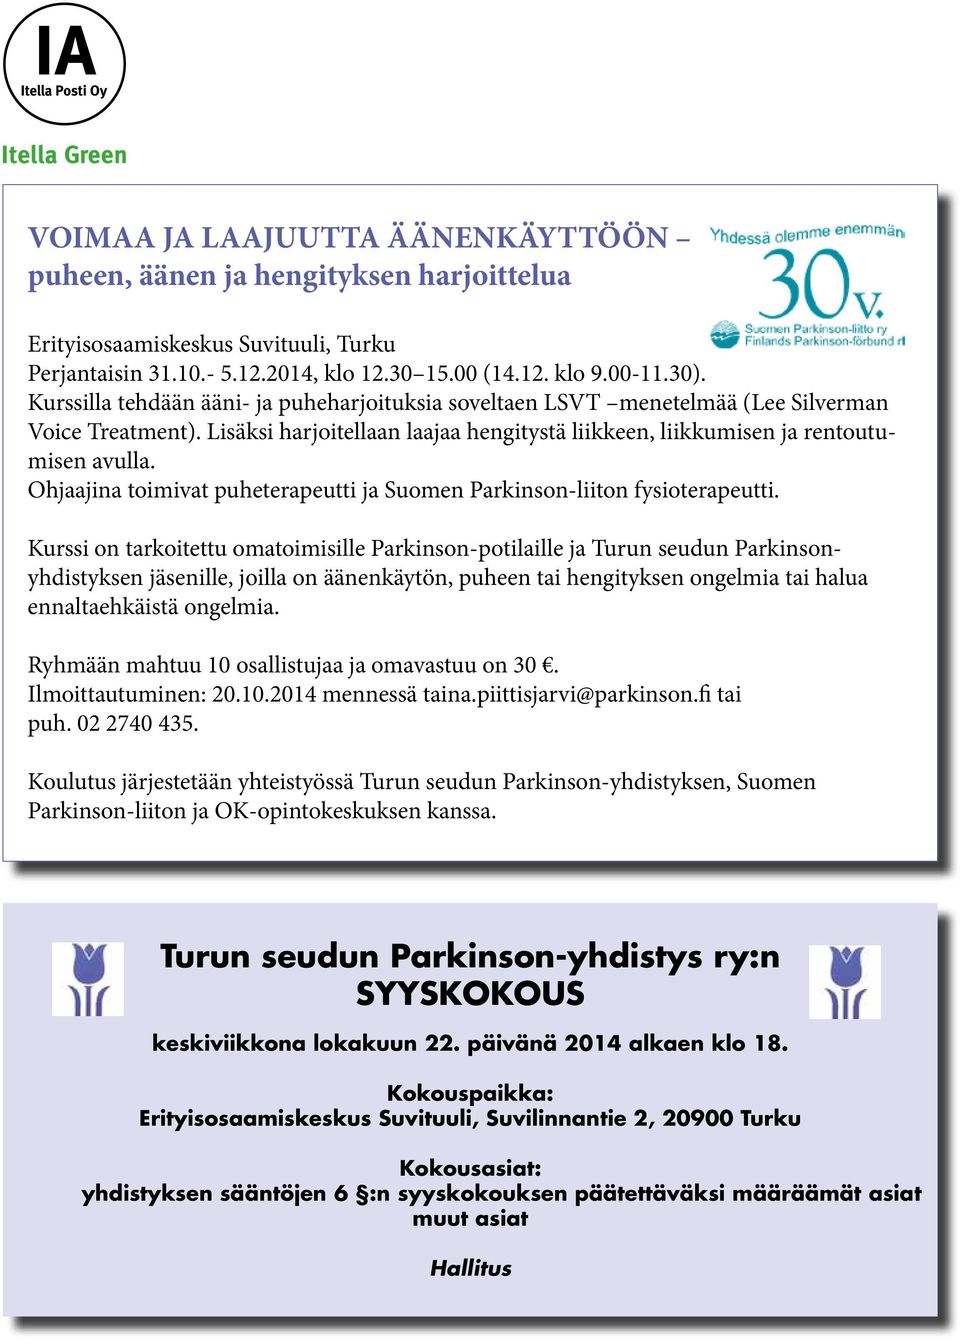 Ohjaajina toimivat puheterapeutti ja Suomen Parkinson-liiton fysioterapeutti. TULE MUKAAN TU TURUSSA 4.10. 14.